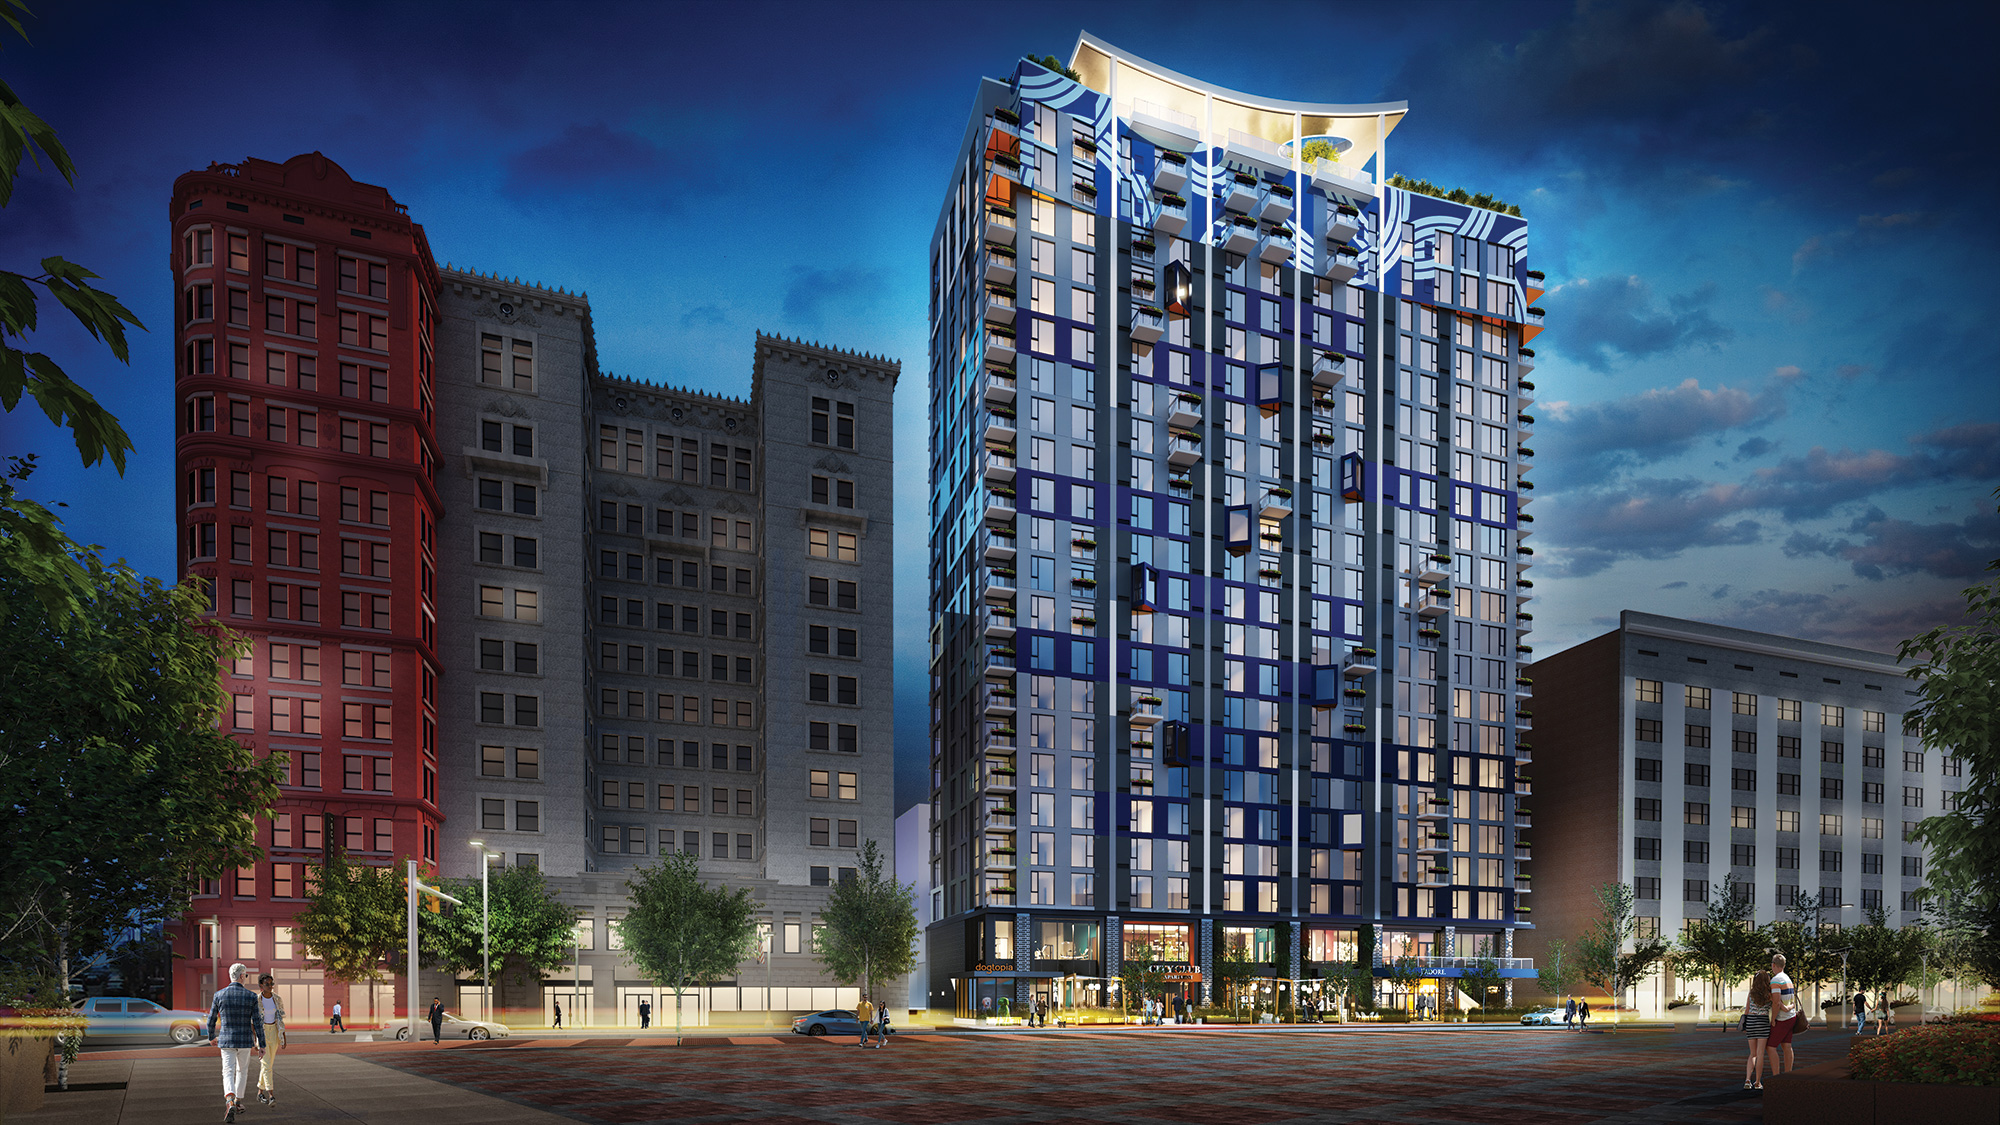 Presque terminés, les appartements du New City Club sur Euclid Avenue comprendront de nouveaux concepts de restauration et de divertissement